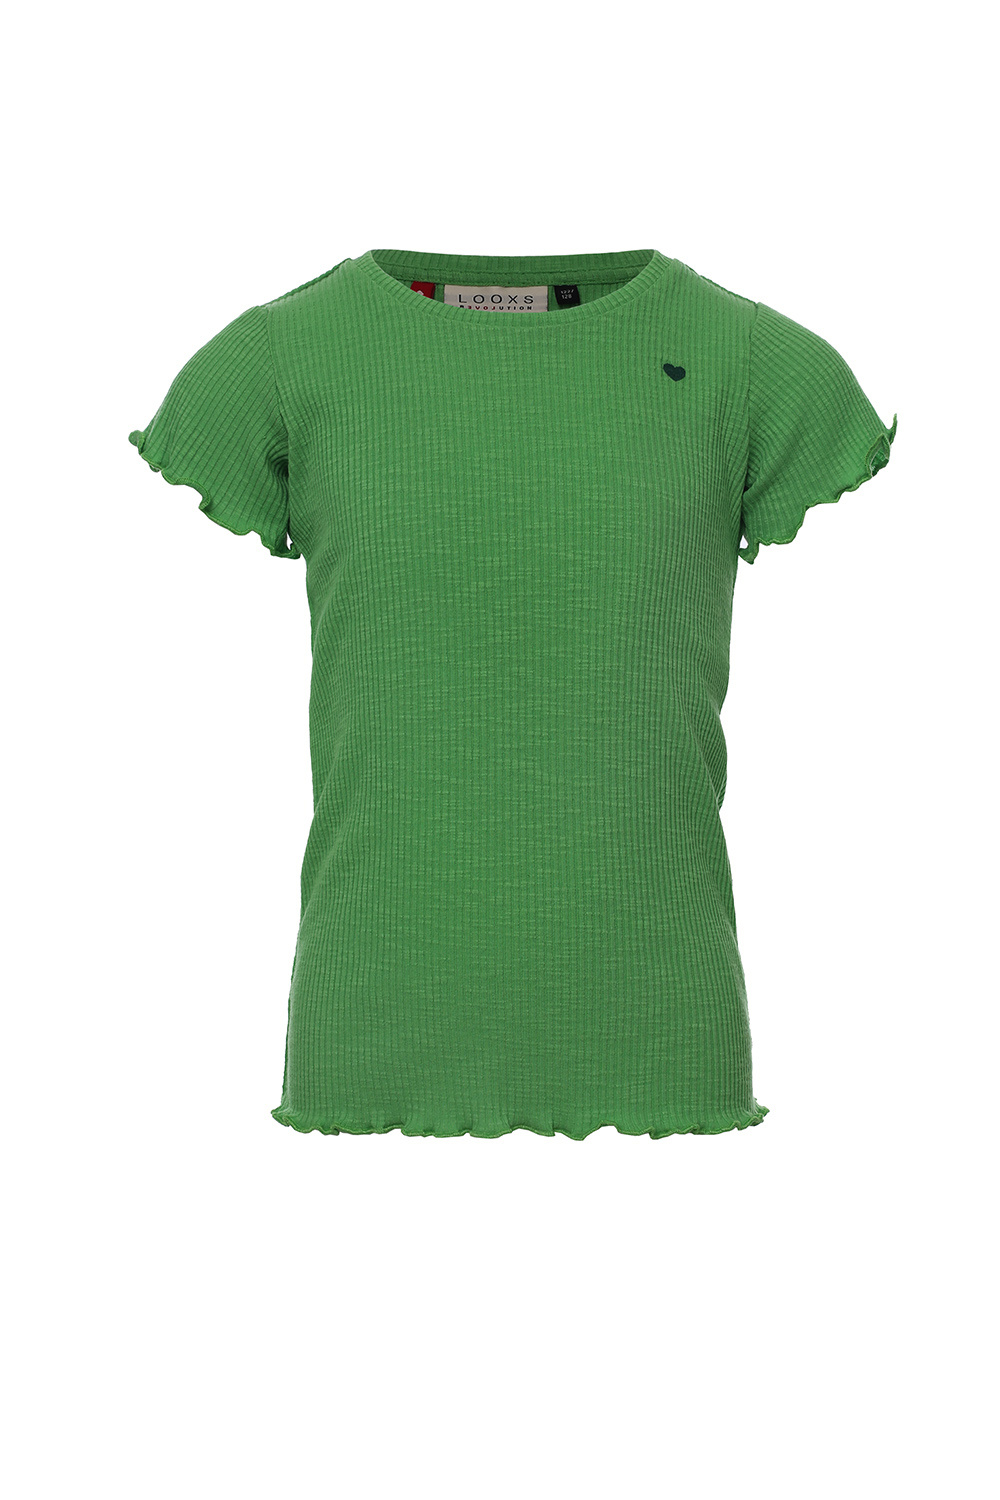 Looxs Revolution 2311-7420-302 Meisjes Shirt - Maat 98 - Groen van Polyester